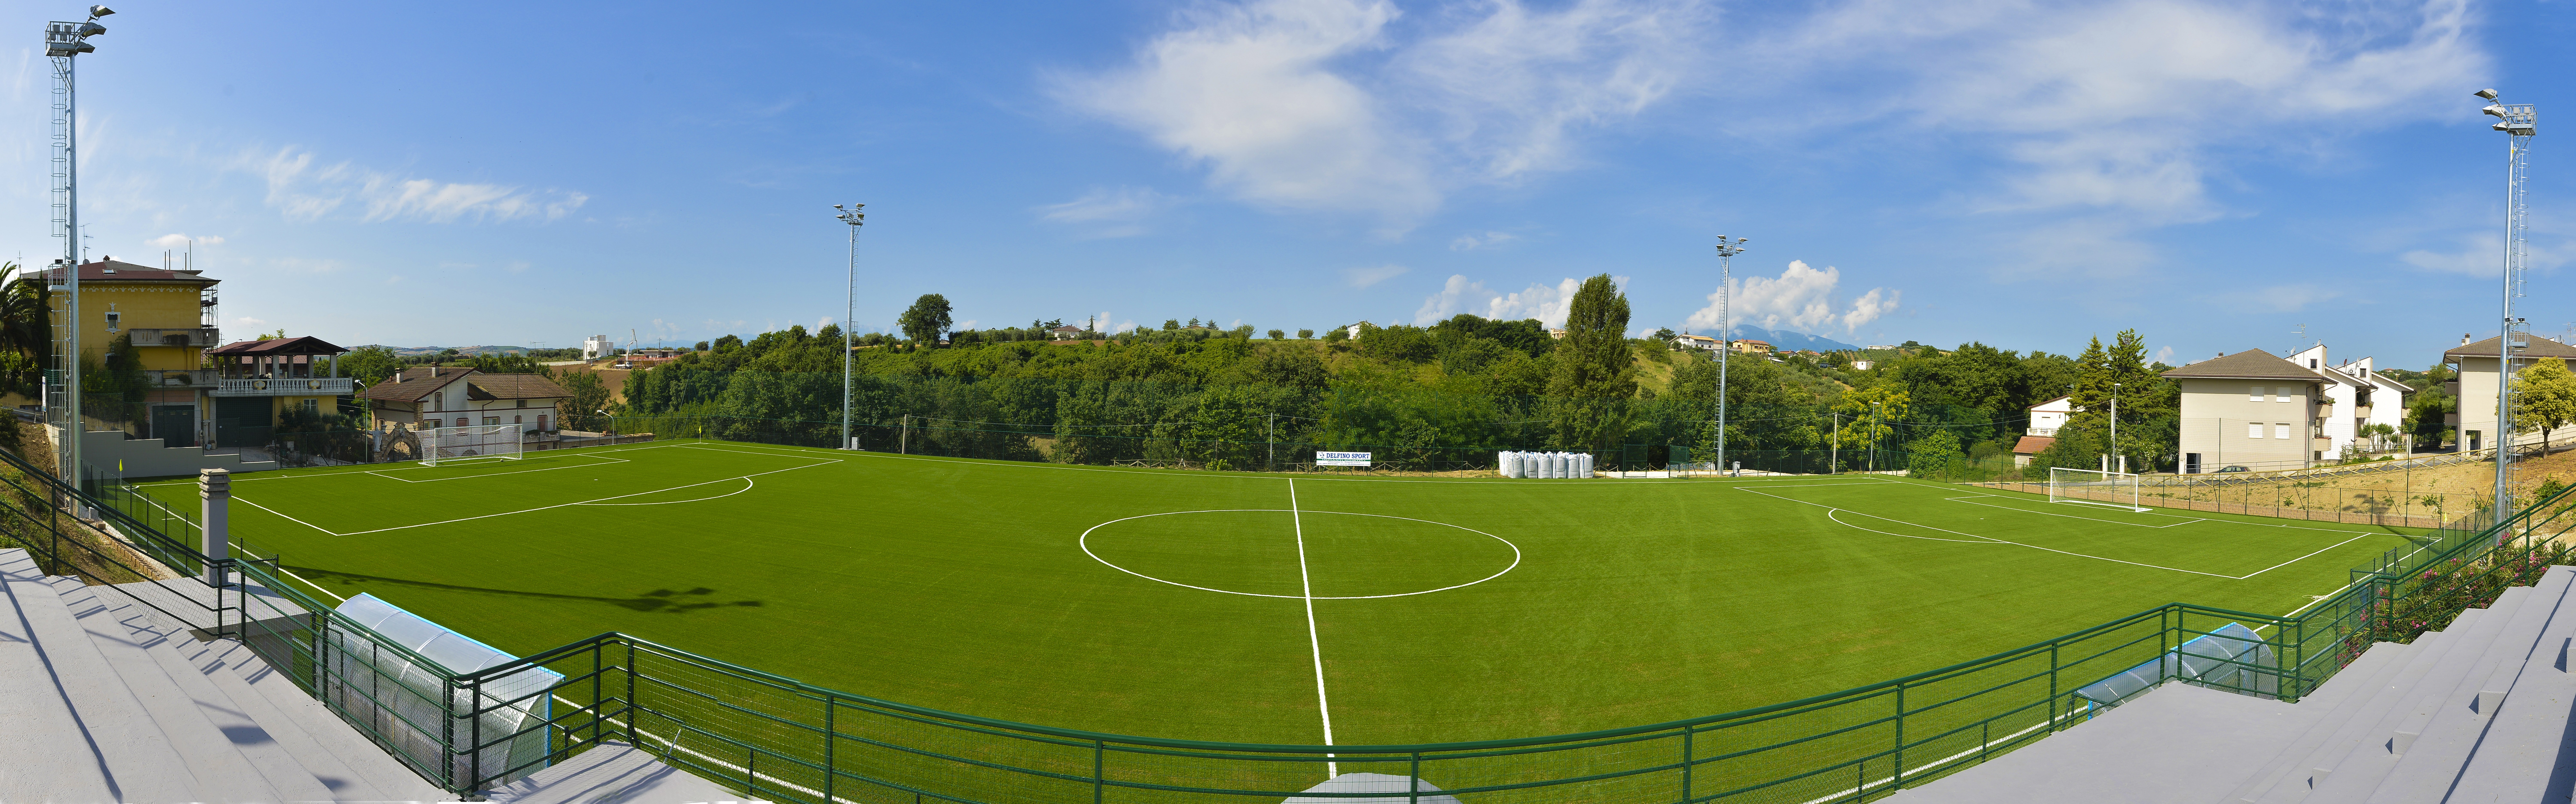 Campo calcio panorama 2